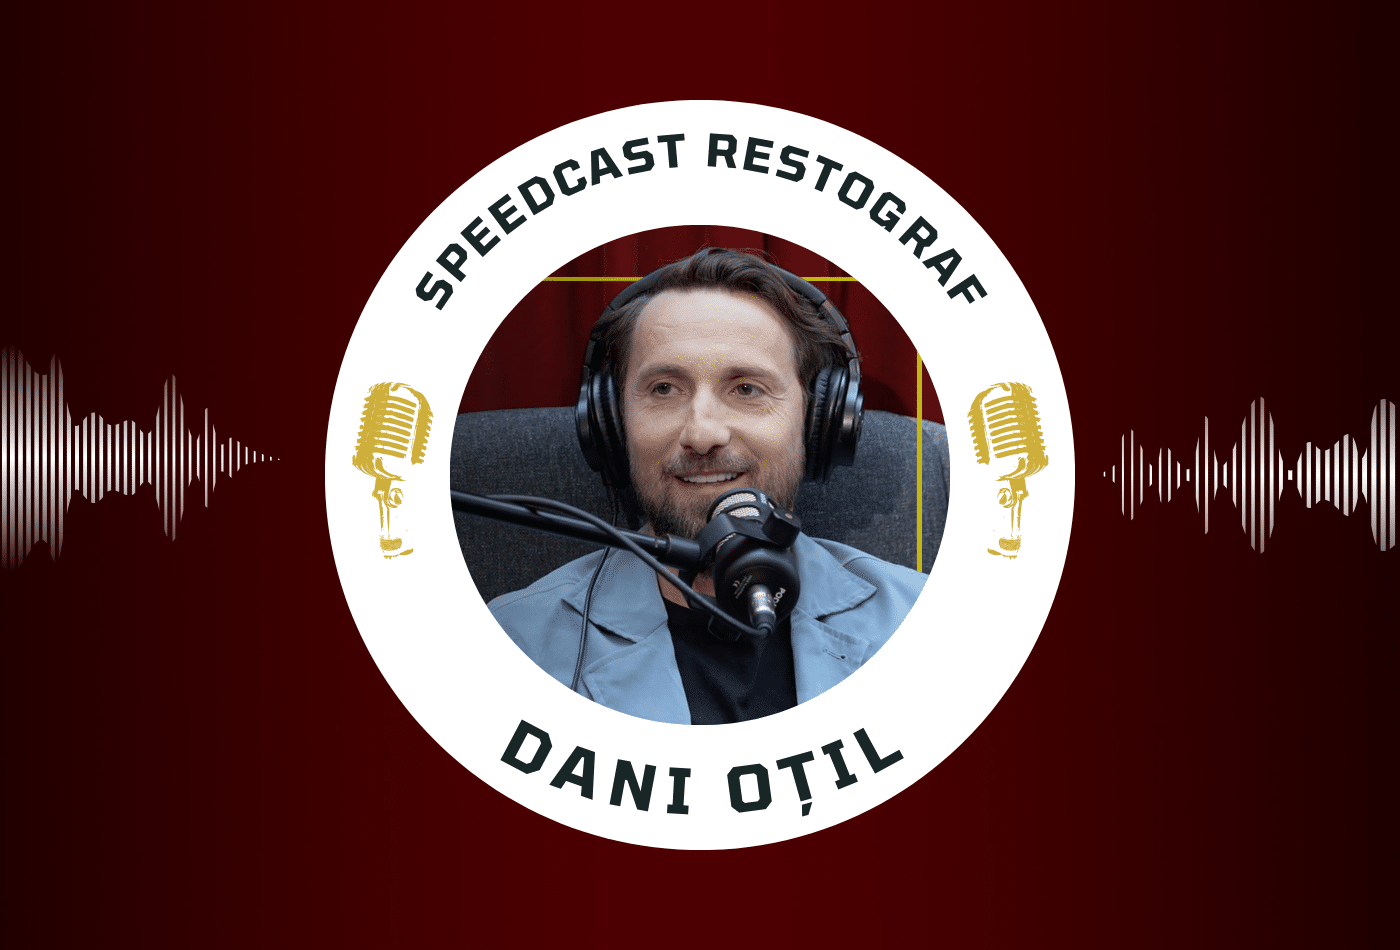 Speedcast Restograf #6, cu Dani Oțil